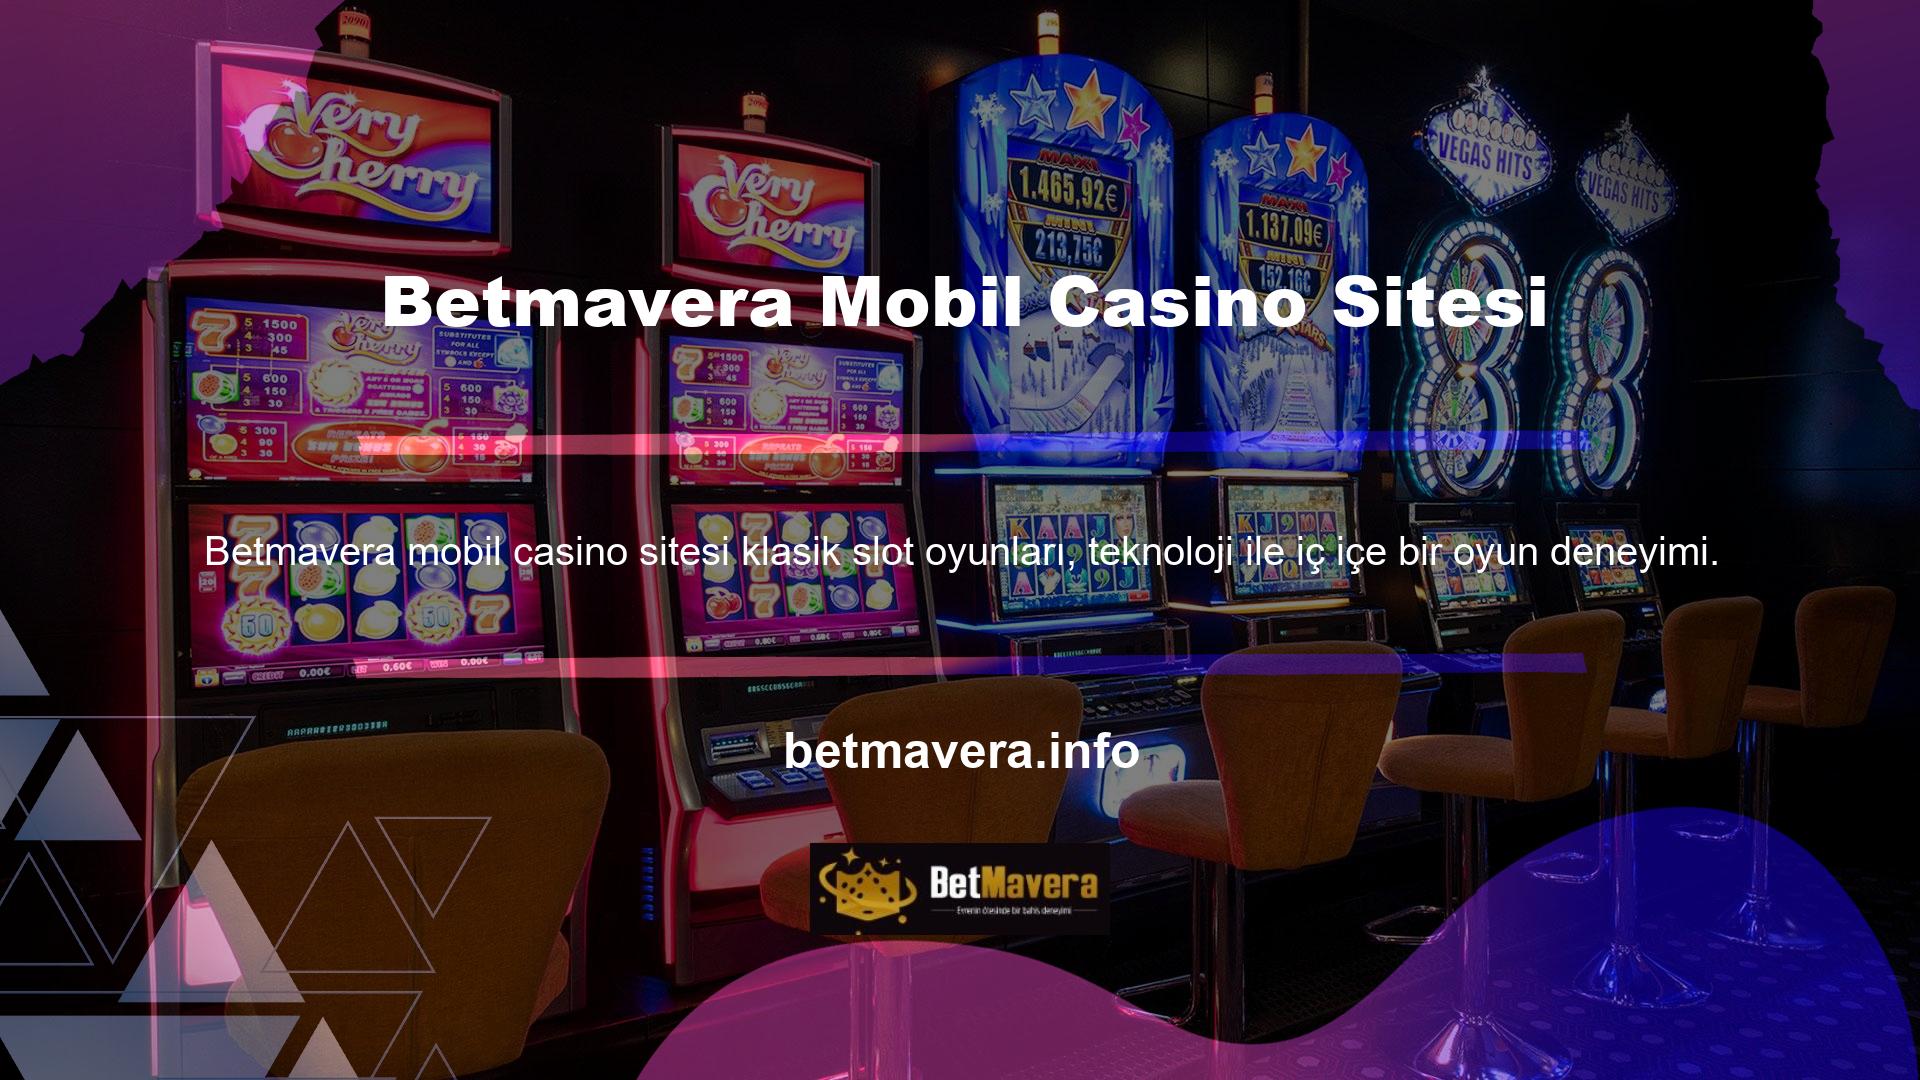 Yerleşik casinolarda çok popüler olmayan ve az parayla oynayan kişiler tarafından oynanan bir oyun